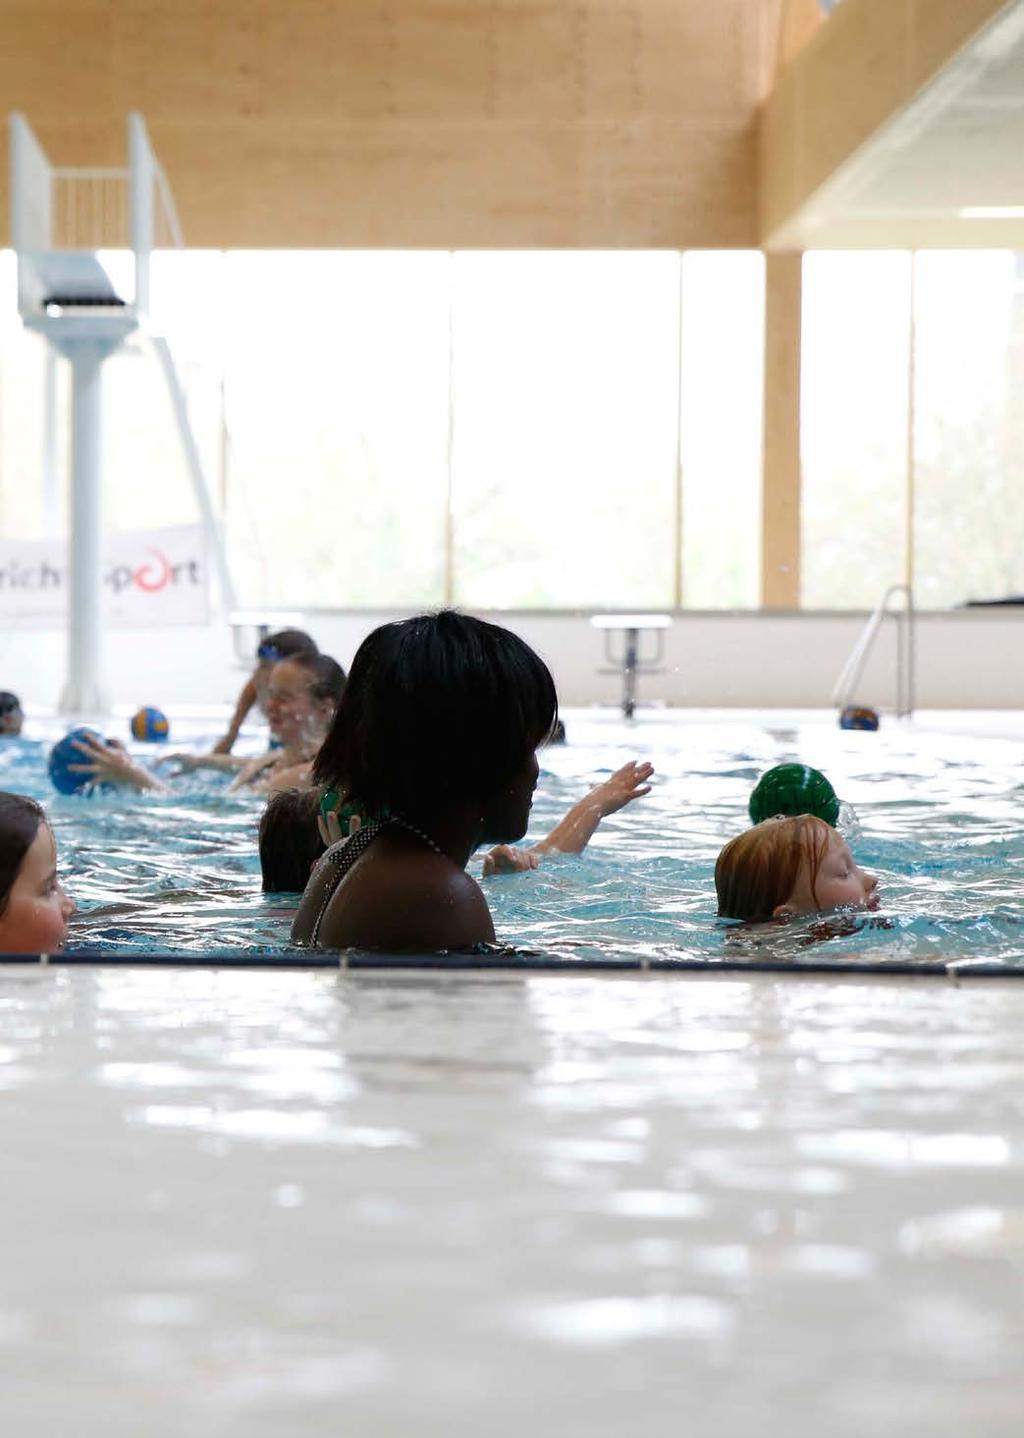 welkom in het Geusseltbad Het Geusseltbad is een zwembad voor iedereen. Jong en oud, recreatief, sportief, op weg naar herstel, individueel of in clubverband.